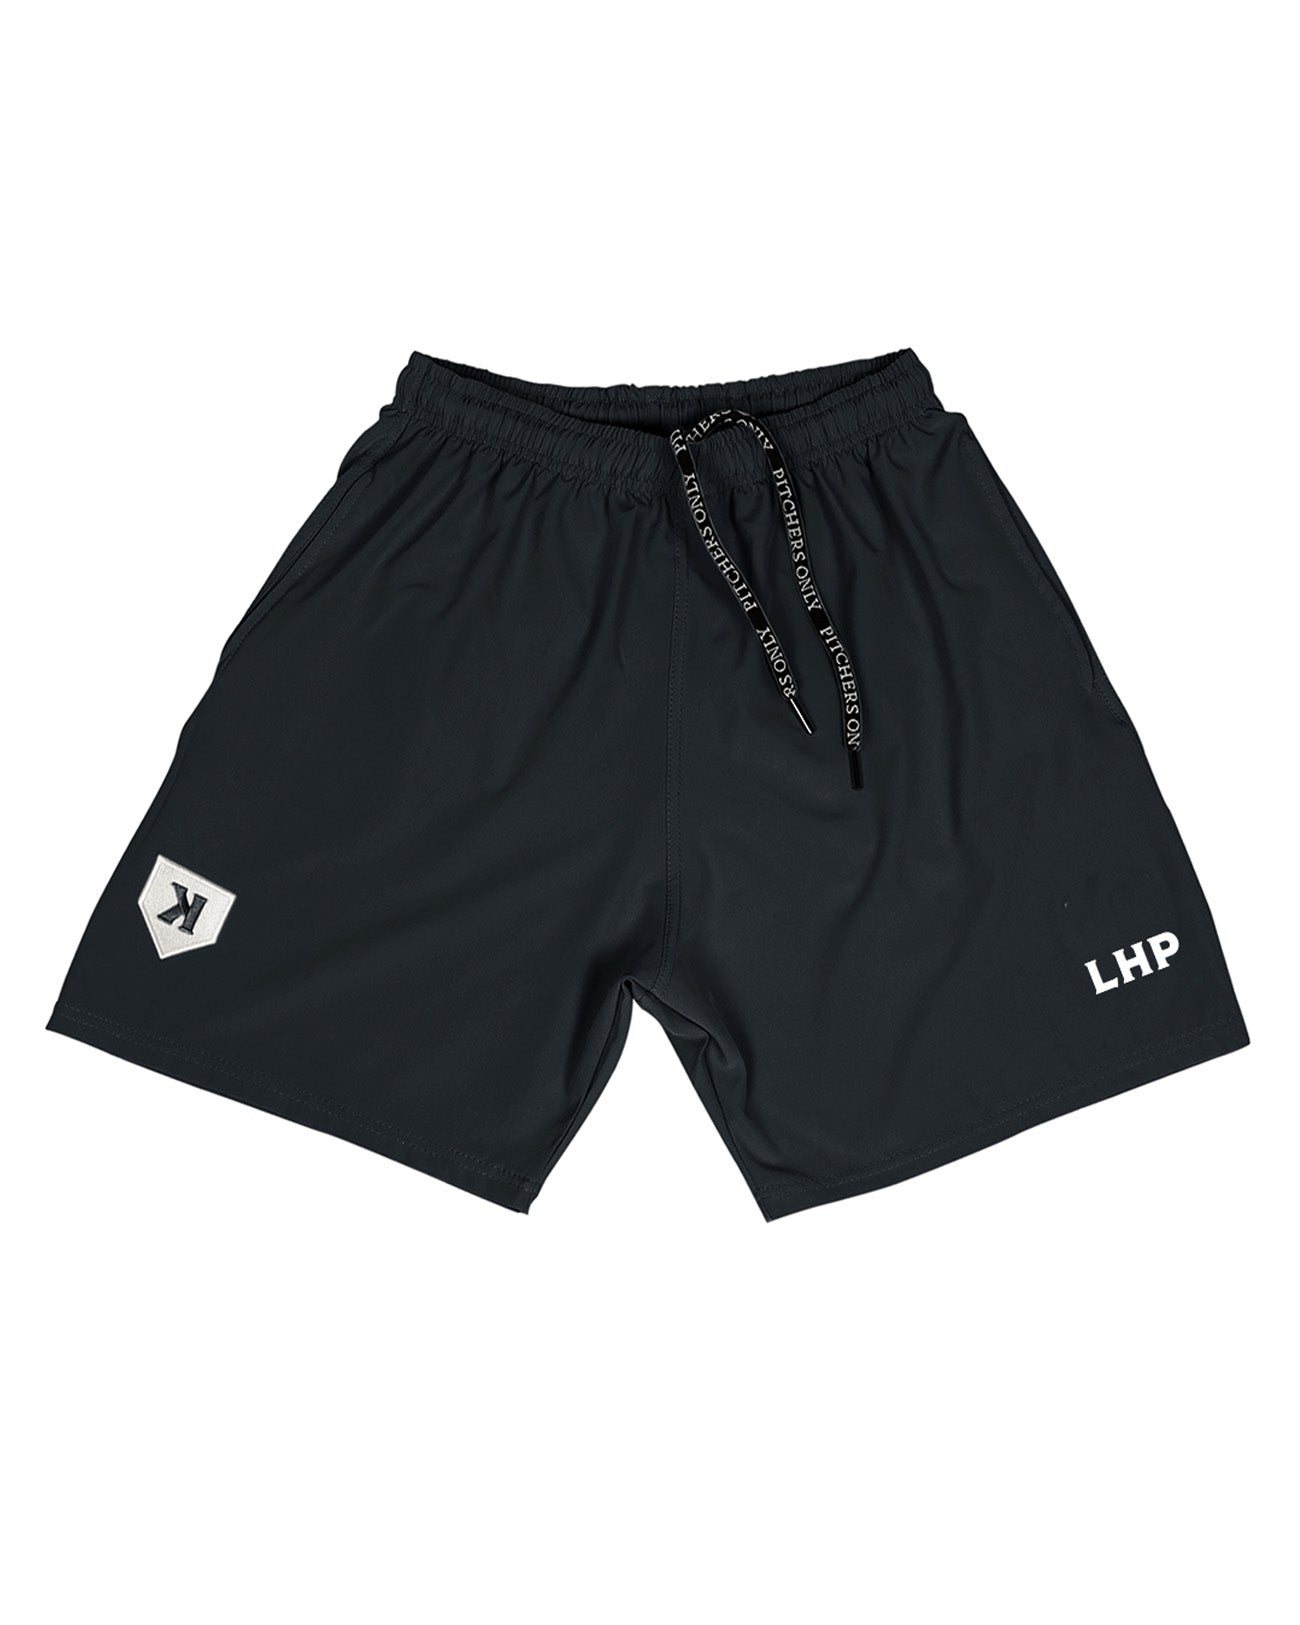 LHP Training Shorts